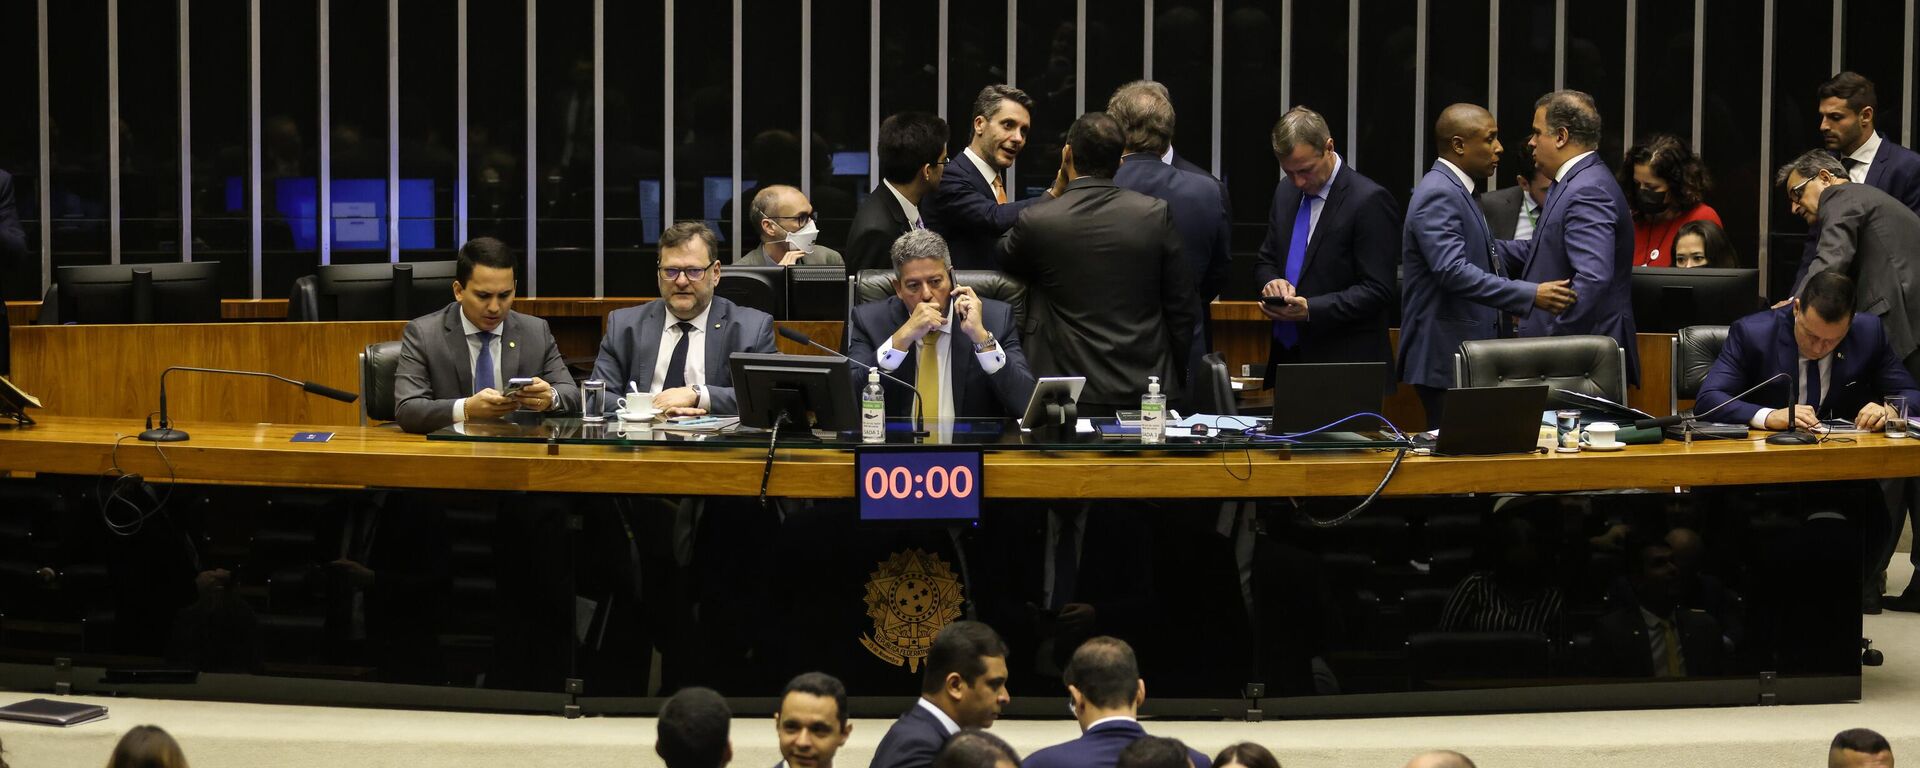 O presidente da Câmara dos Deputados, Arthur Lira, abre sessão para votação da PEC Kamikaze - Sputnik Brasil, 1920, 06.10.2022